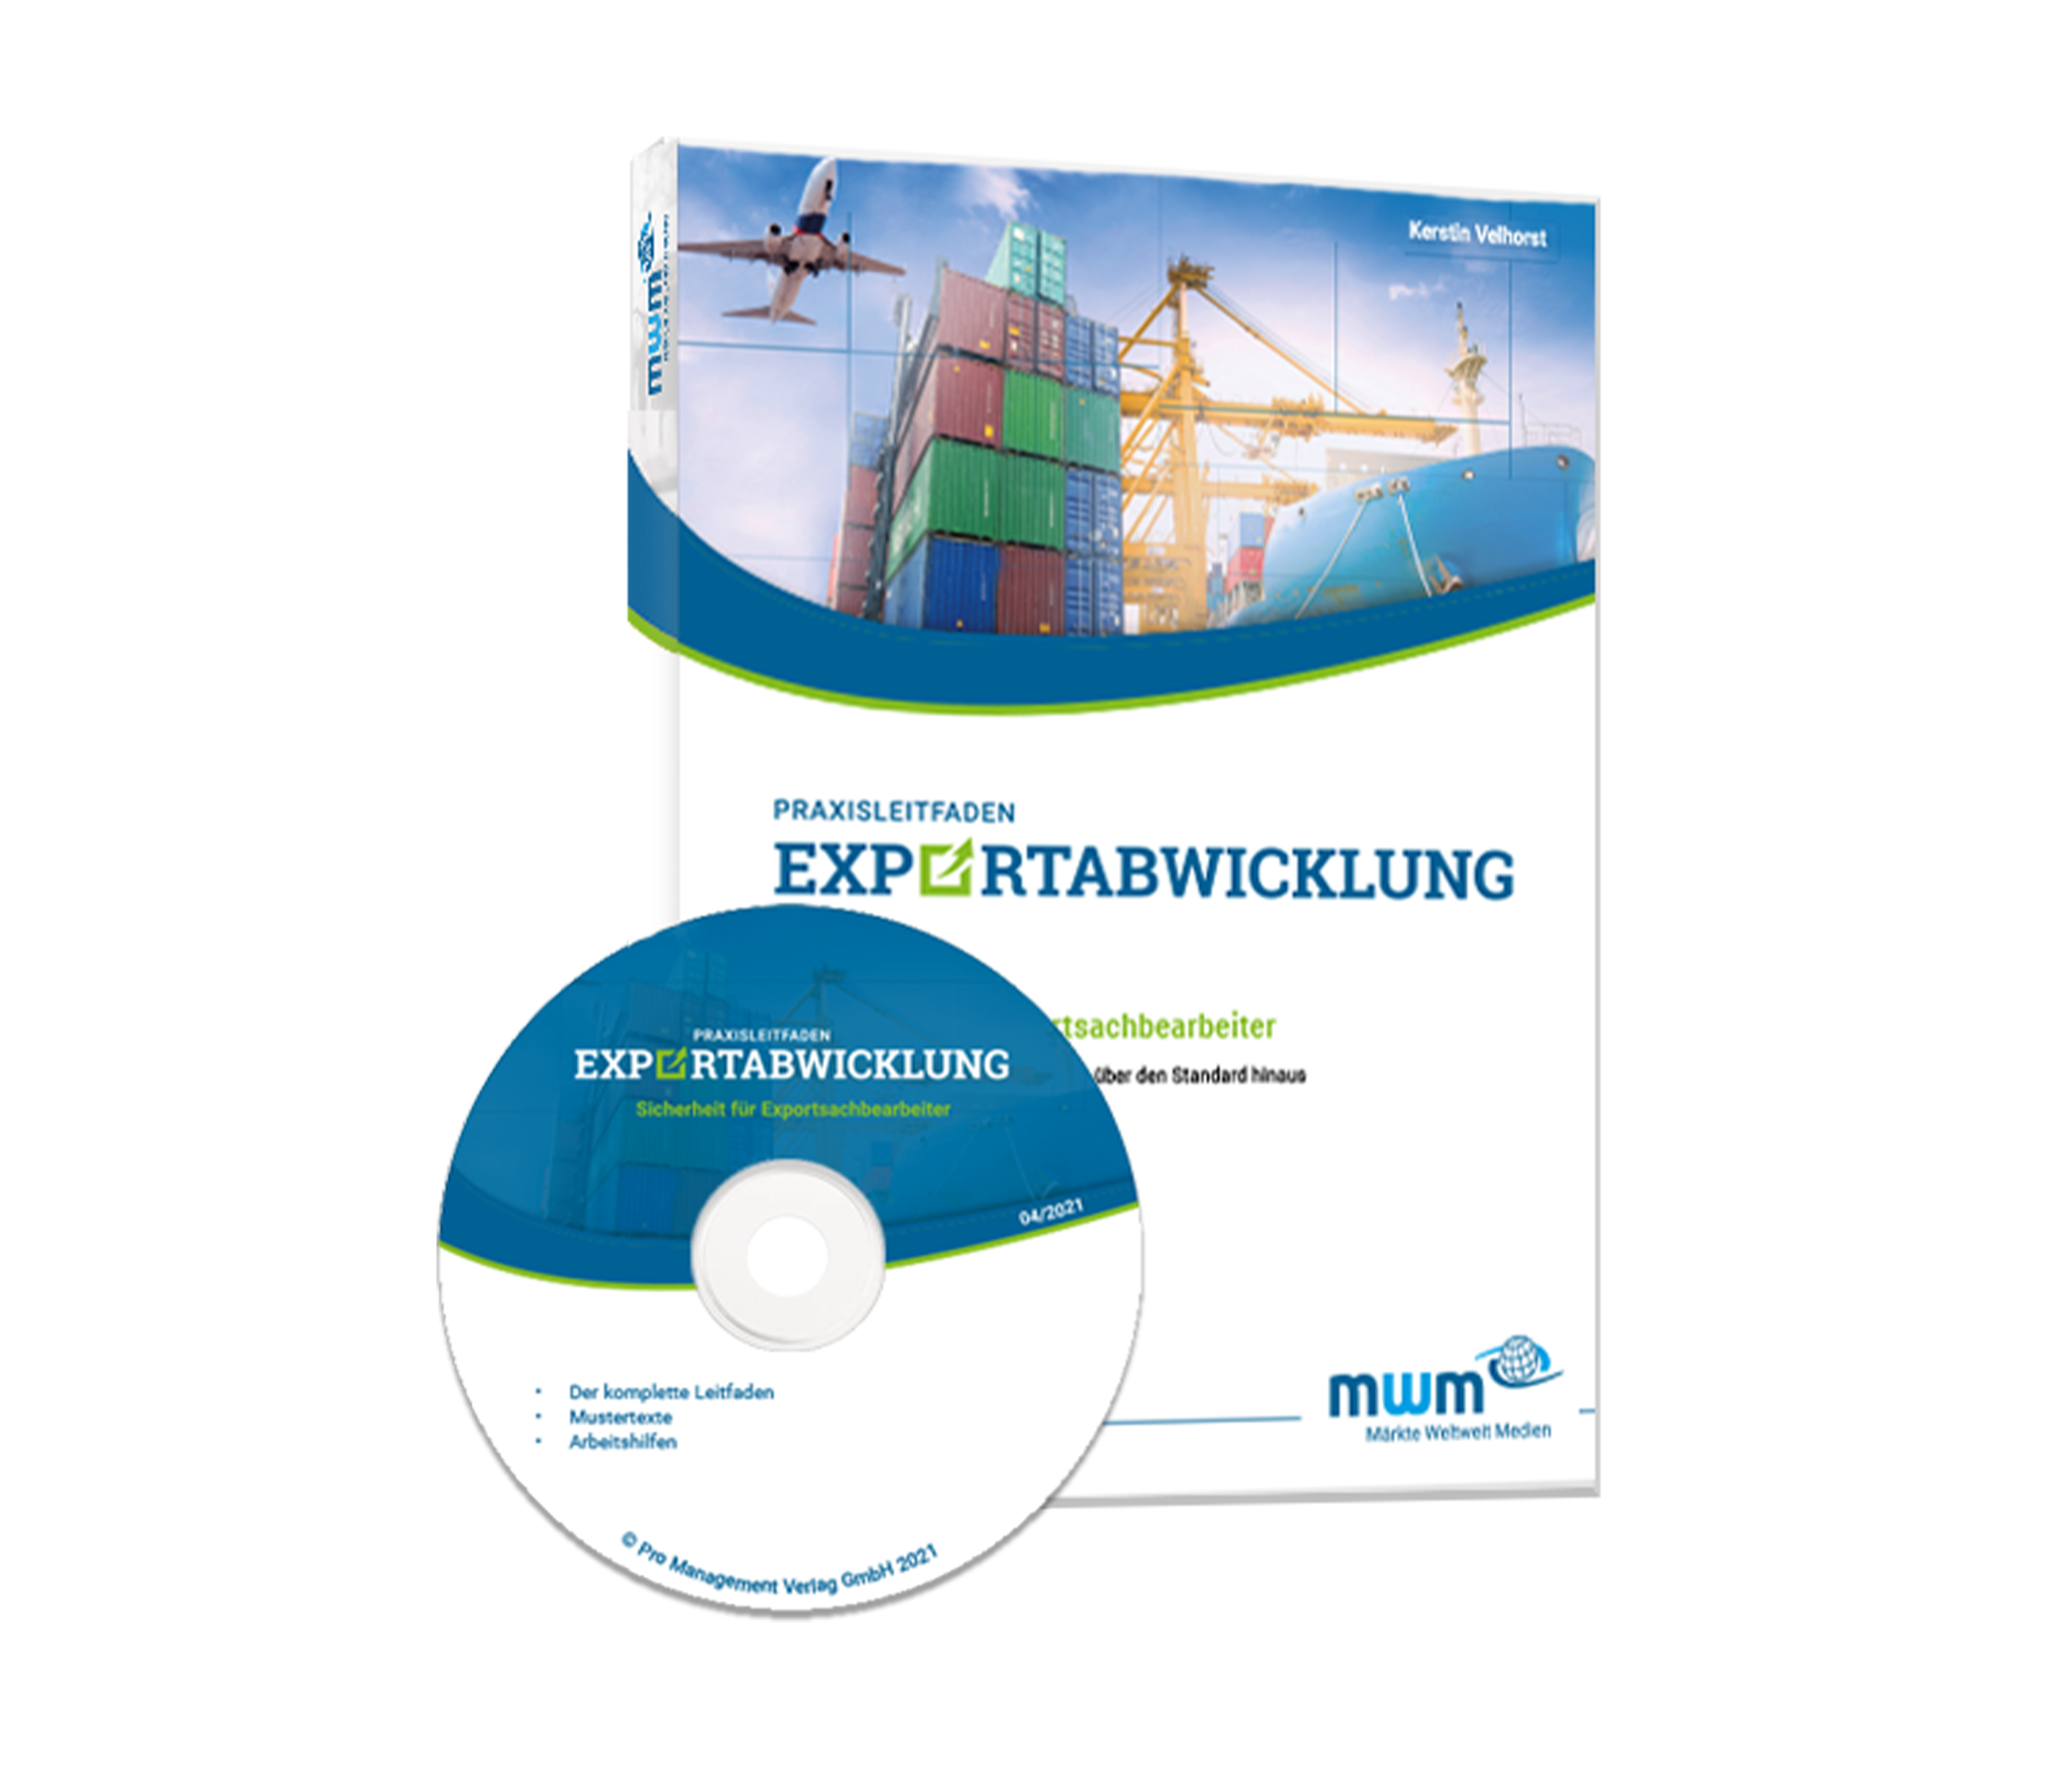 Praxisleitfaden Exportabwicklung – CD-Edition